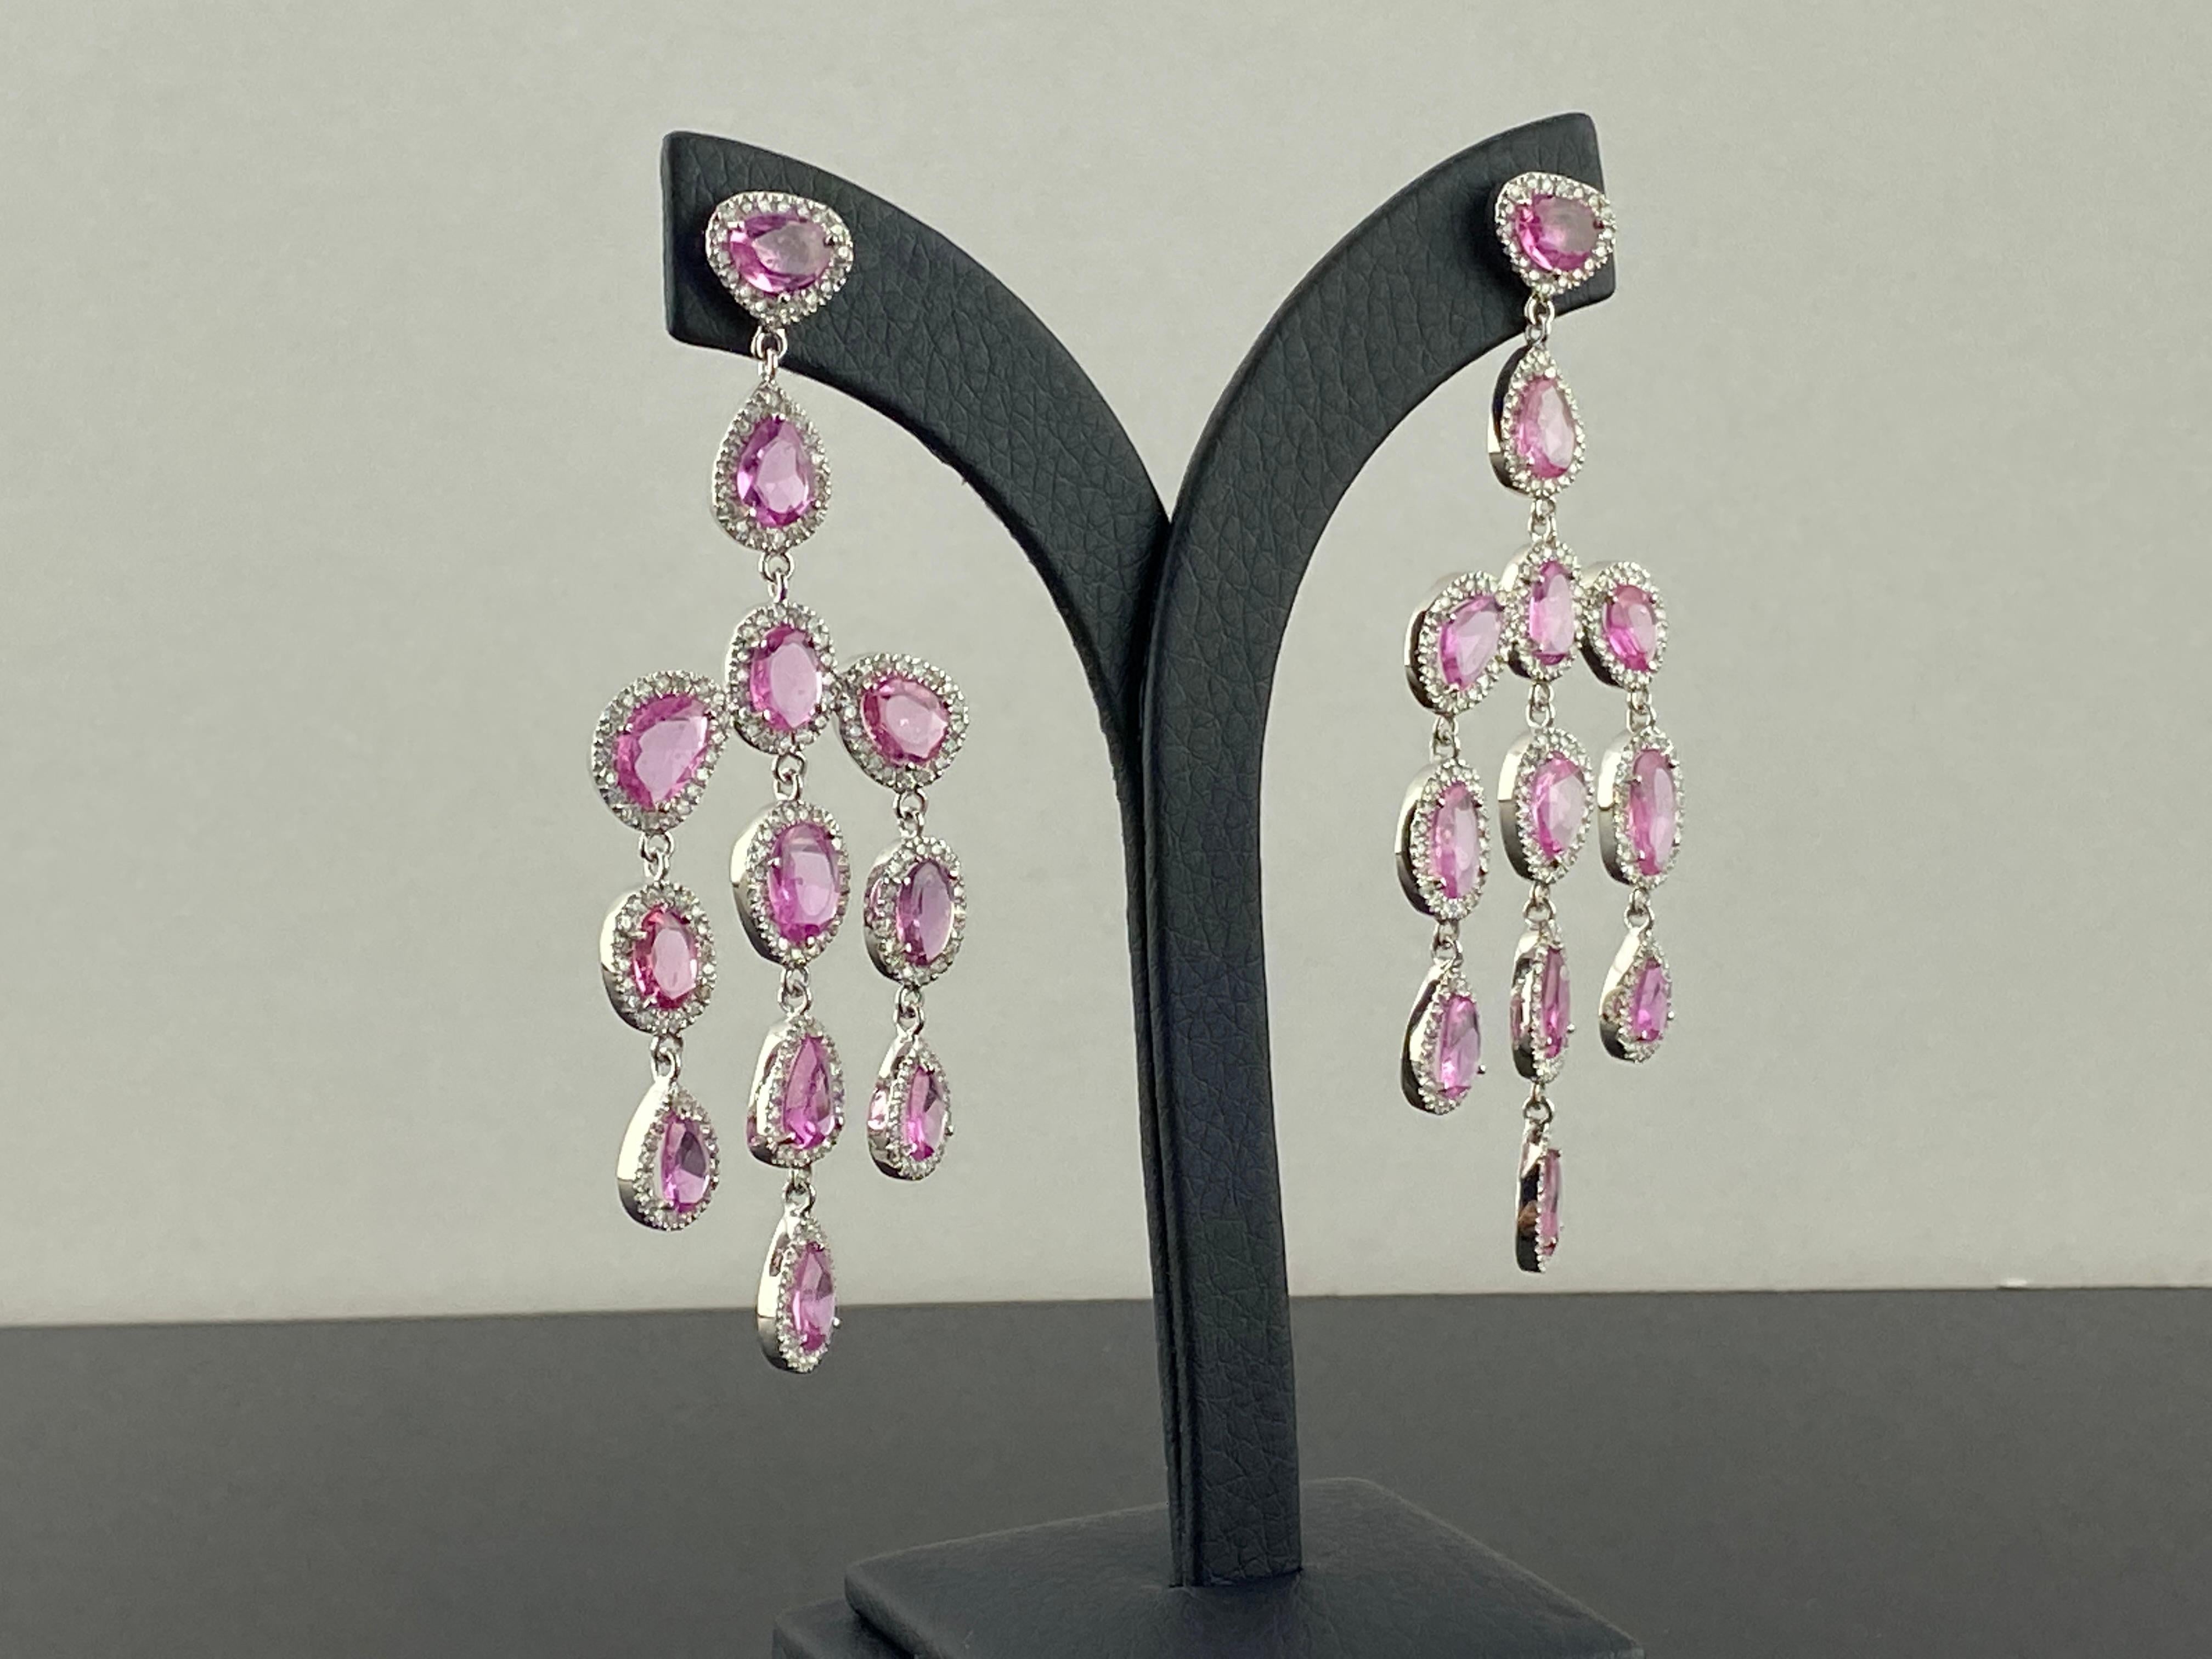 Superbe paire de boucles d'oreilles pendantes en saphir rose de 16,61 carats et diamant, montées en or blanc 18 carats. Les boucles d'oreilles sont légères, environ 17 grammes au total, et mesurent 3 pouces de long. Les saphirs ont une couleur rose